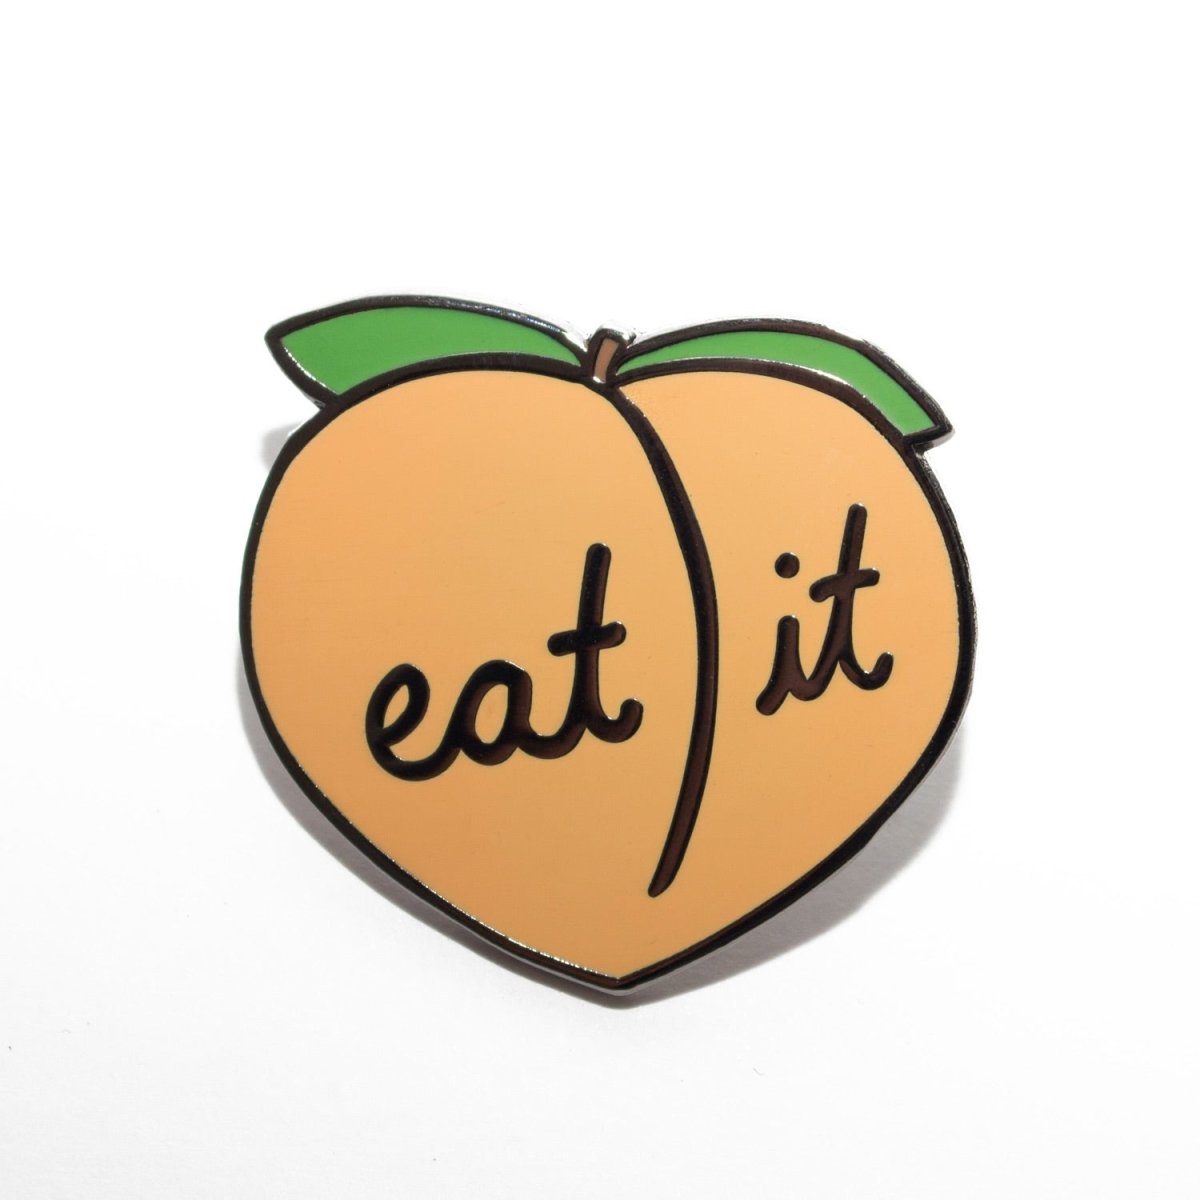 Eat It Peach Pin - Enamel Pin - Pretty Bad Co.